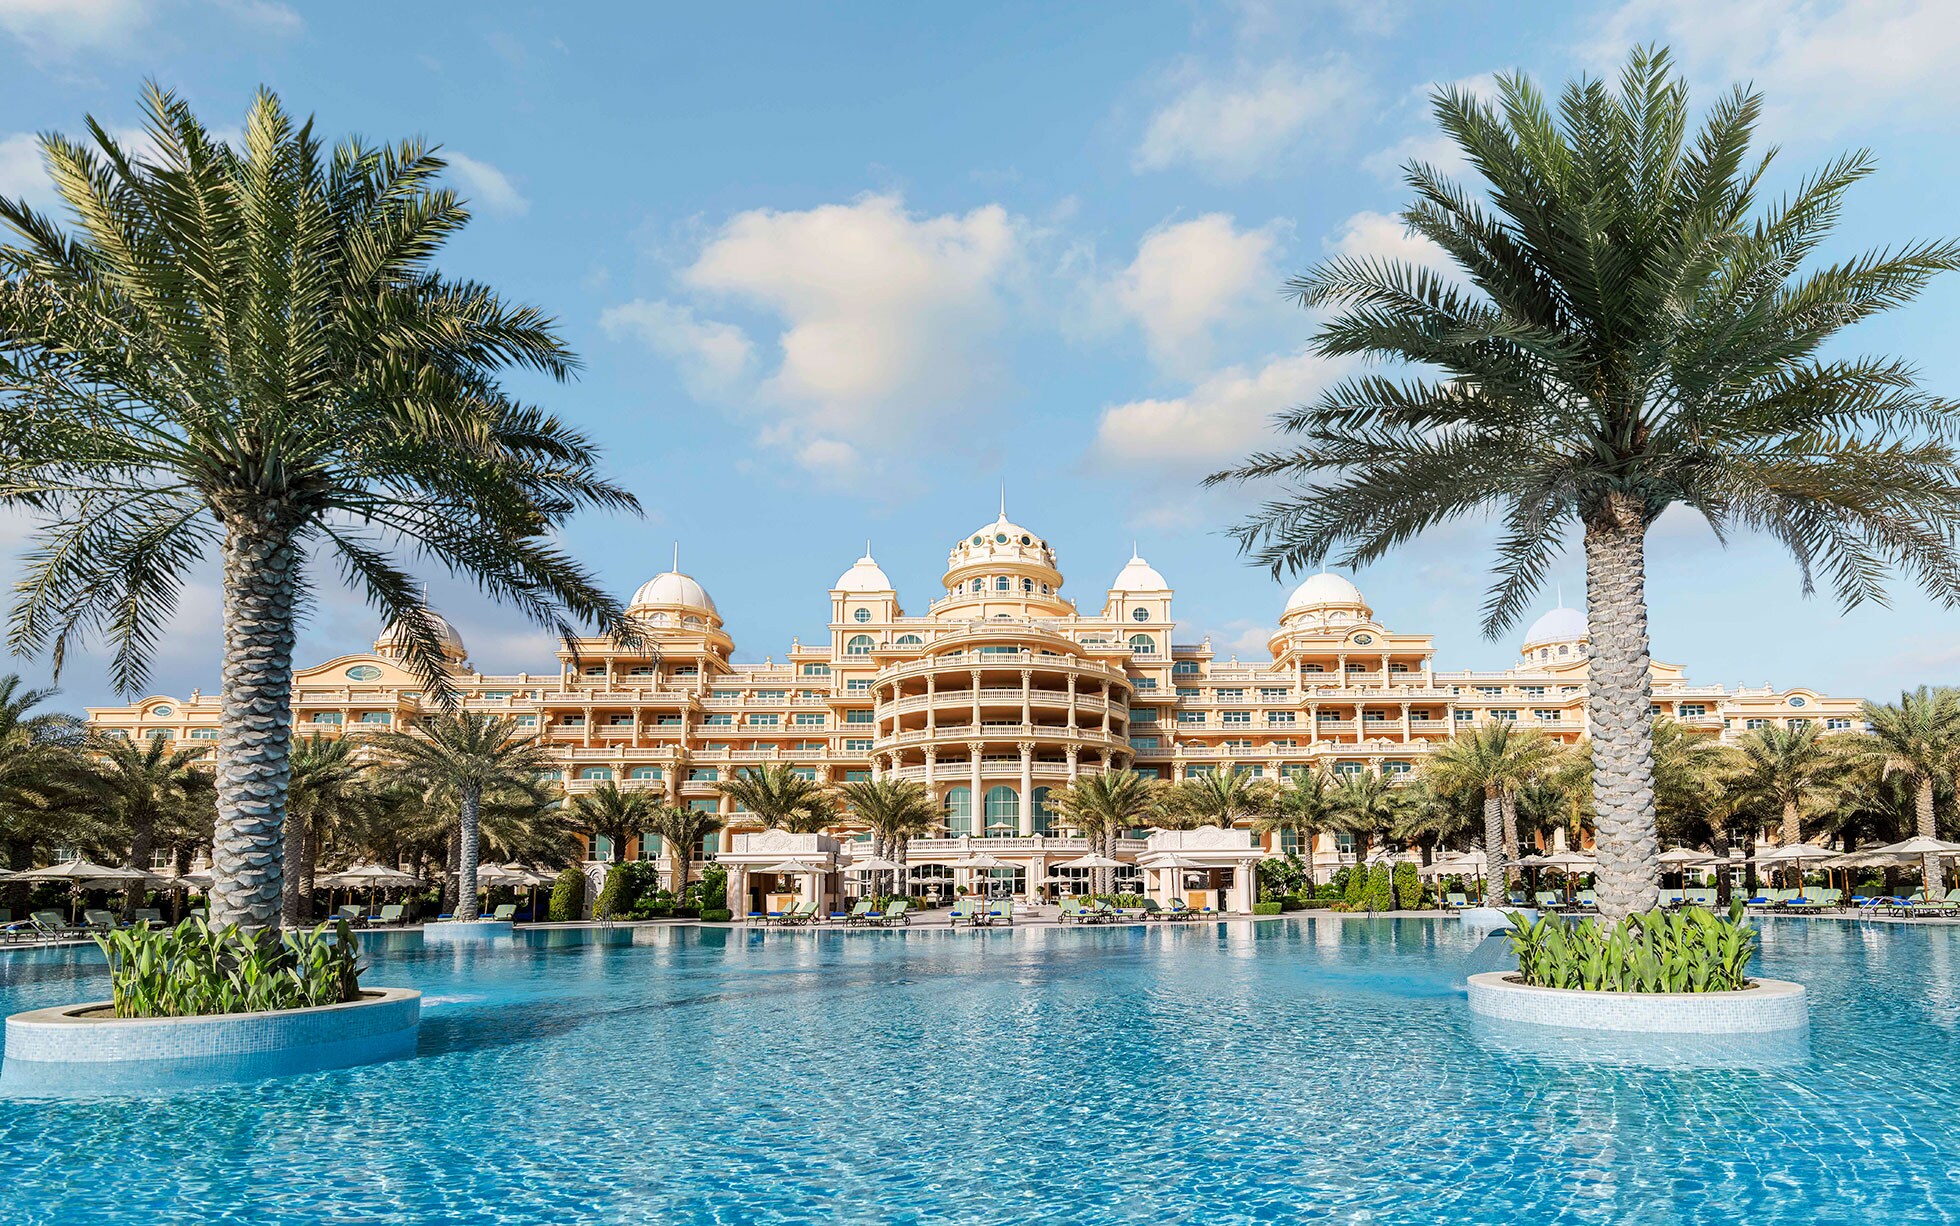 منتجع و فندق رافلز نخلة جميرا يعد من أفضل منتجعات دبي للعرسان